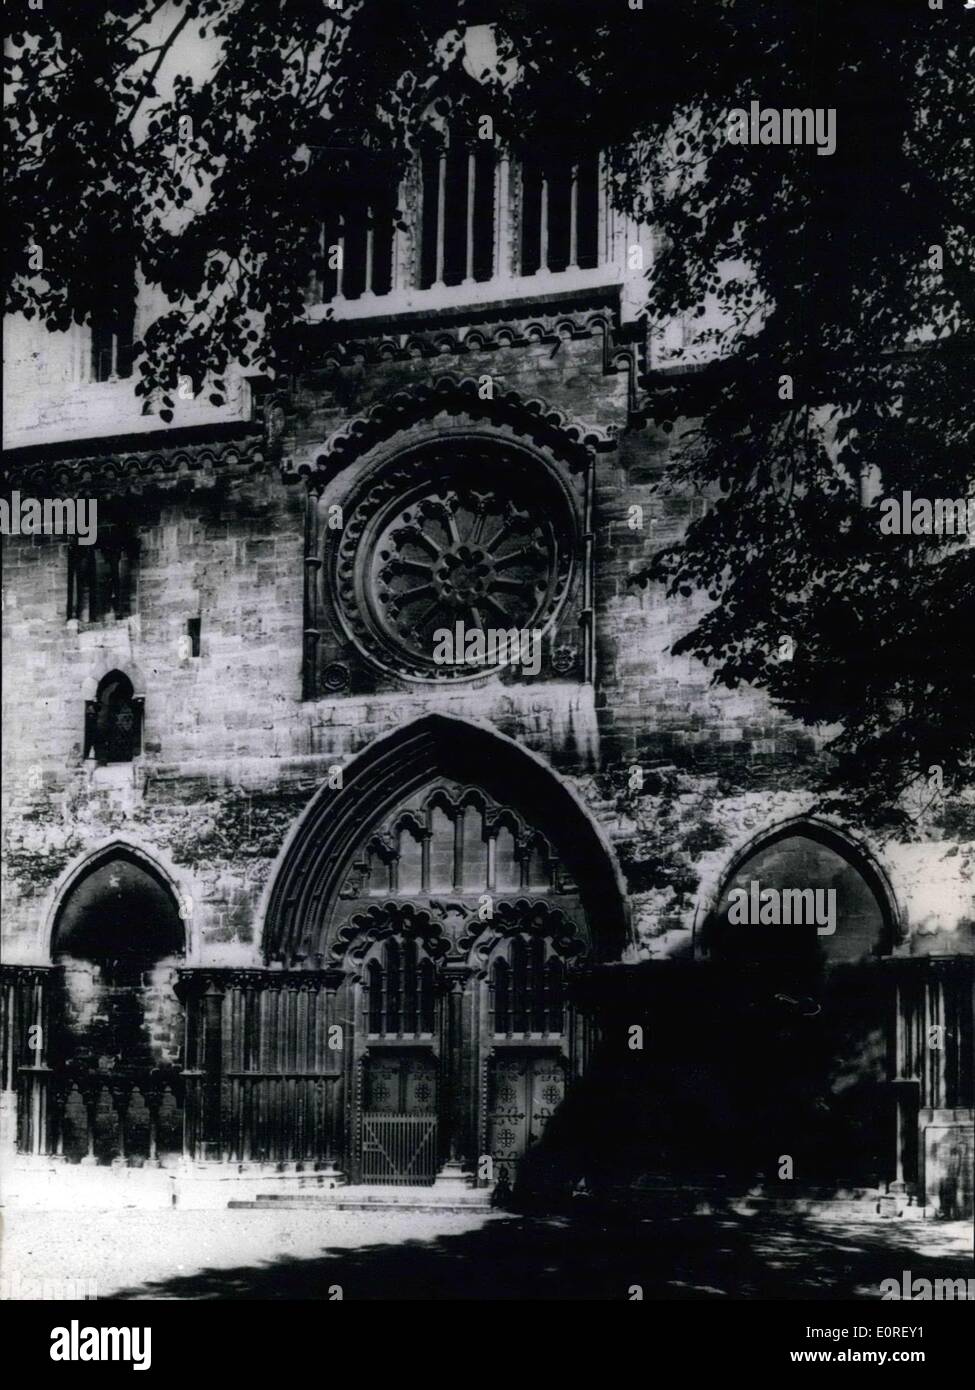 Giugno 04, 1959 - nella foto è la cattedrale di Halberstadt, che proviene dall'anno 1235. La Chiesa ha attraversato momenti difficili durante l'epoca in cui i sovietici hanno occupato la zona. La cattedrale gotica è rinomato per la sua forma sottile e uno della Germania edificio più rari memoriali. Qui illustrato è la principale porta d ingresso della cattedrale. Foto Stock